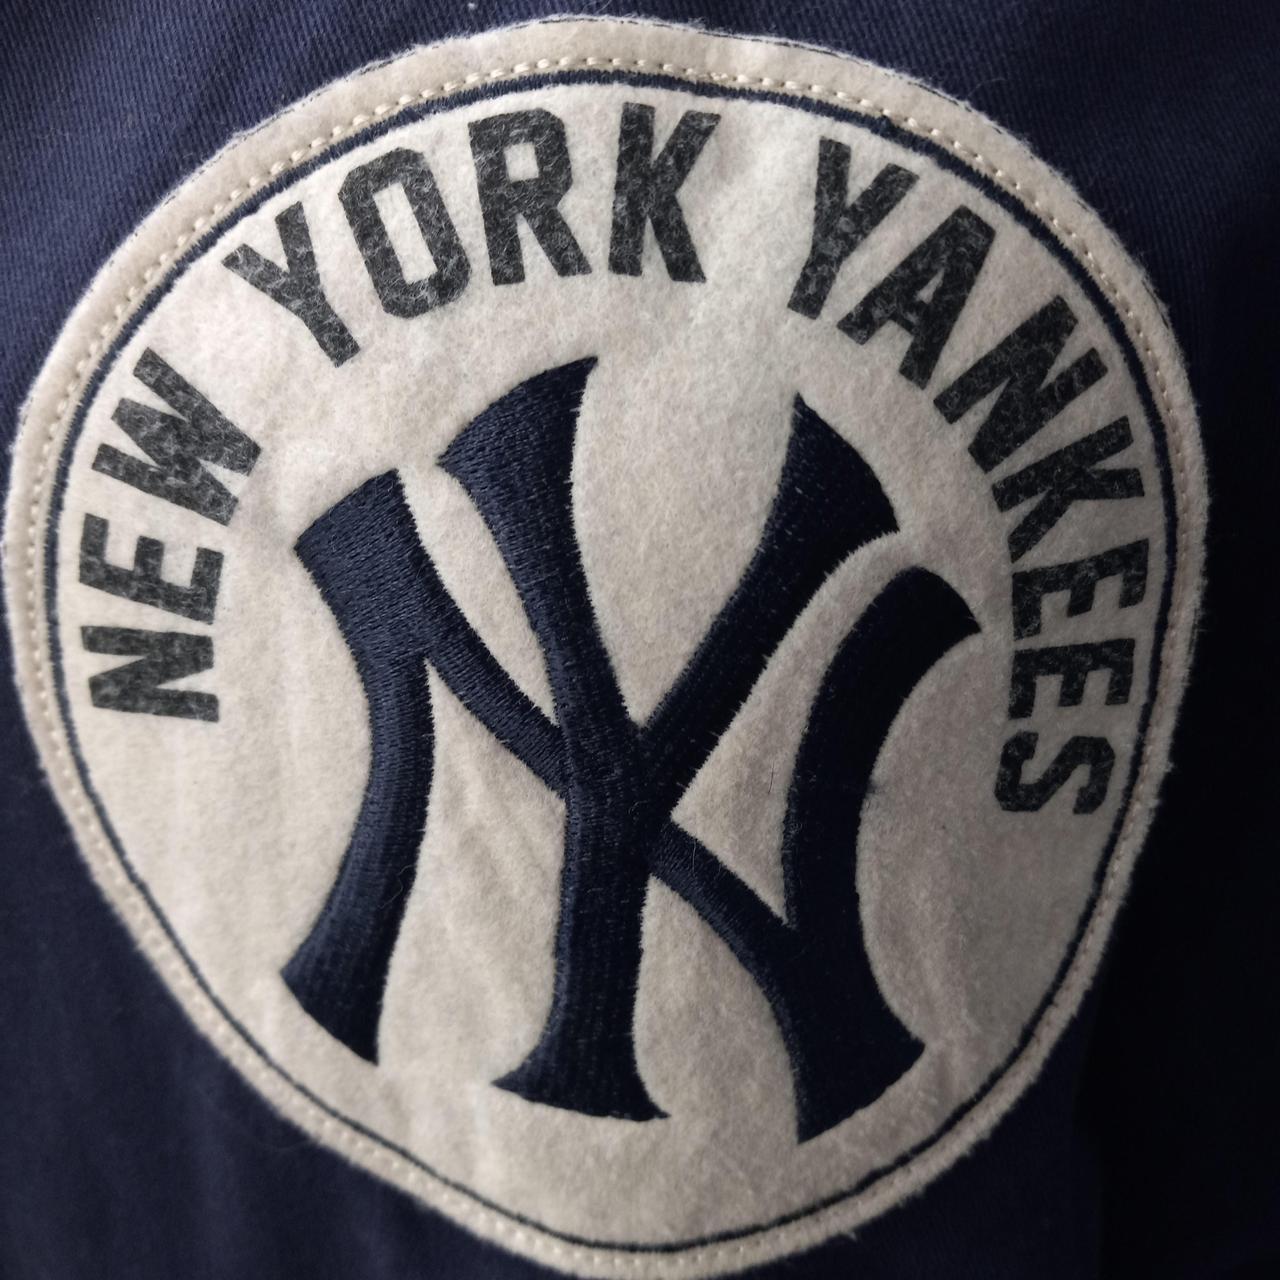 Yankees Mitchel & Ness Jacket CoopersTown - Depop